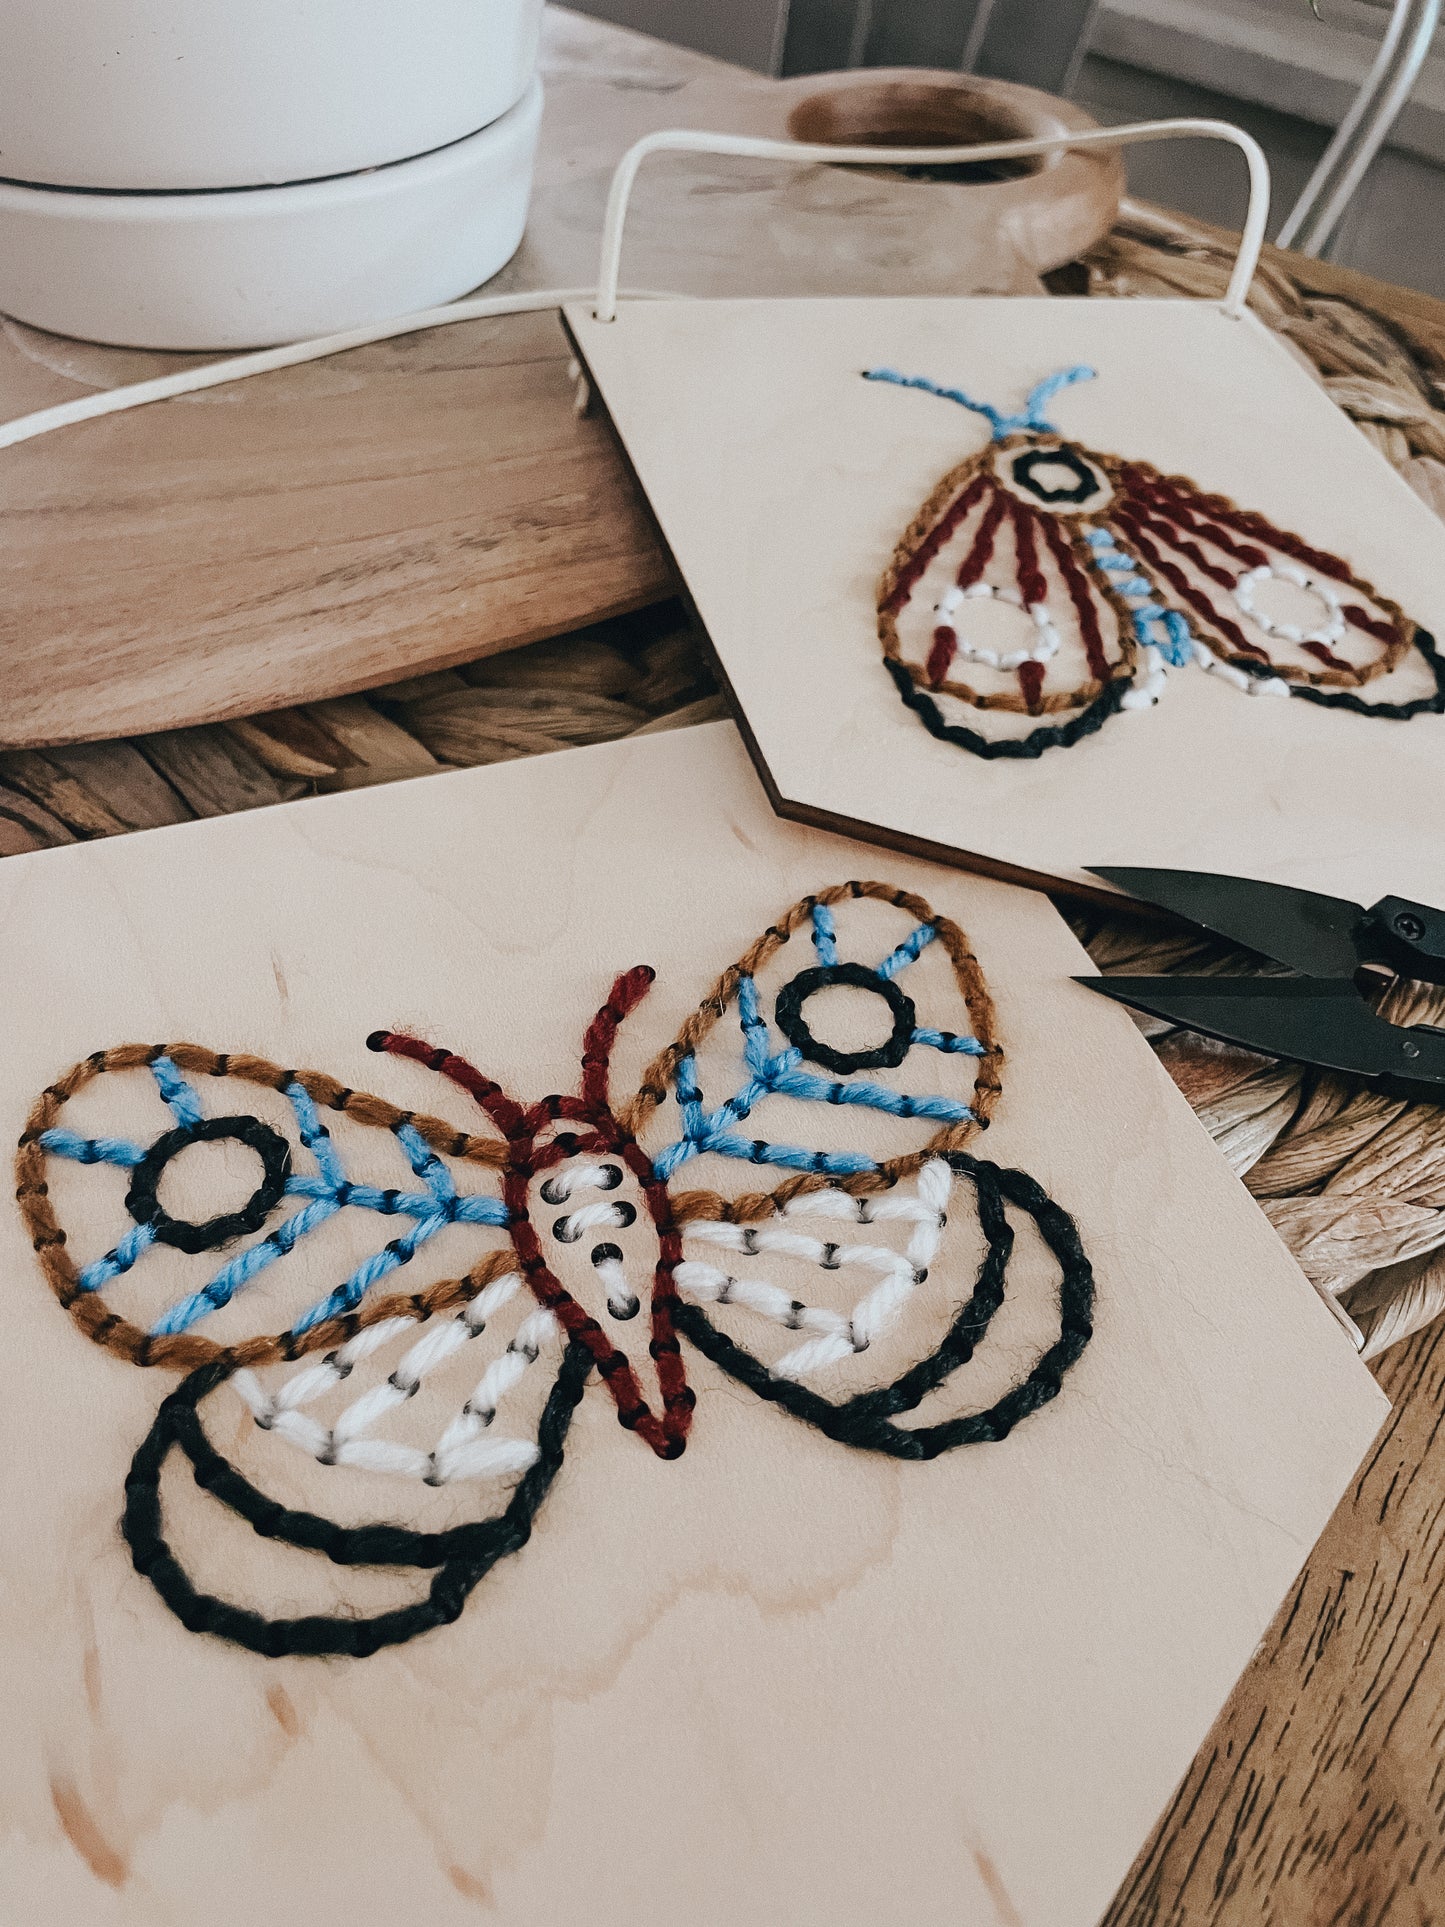 Moth Pennant Yarn Kit | DIY